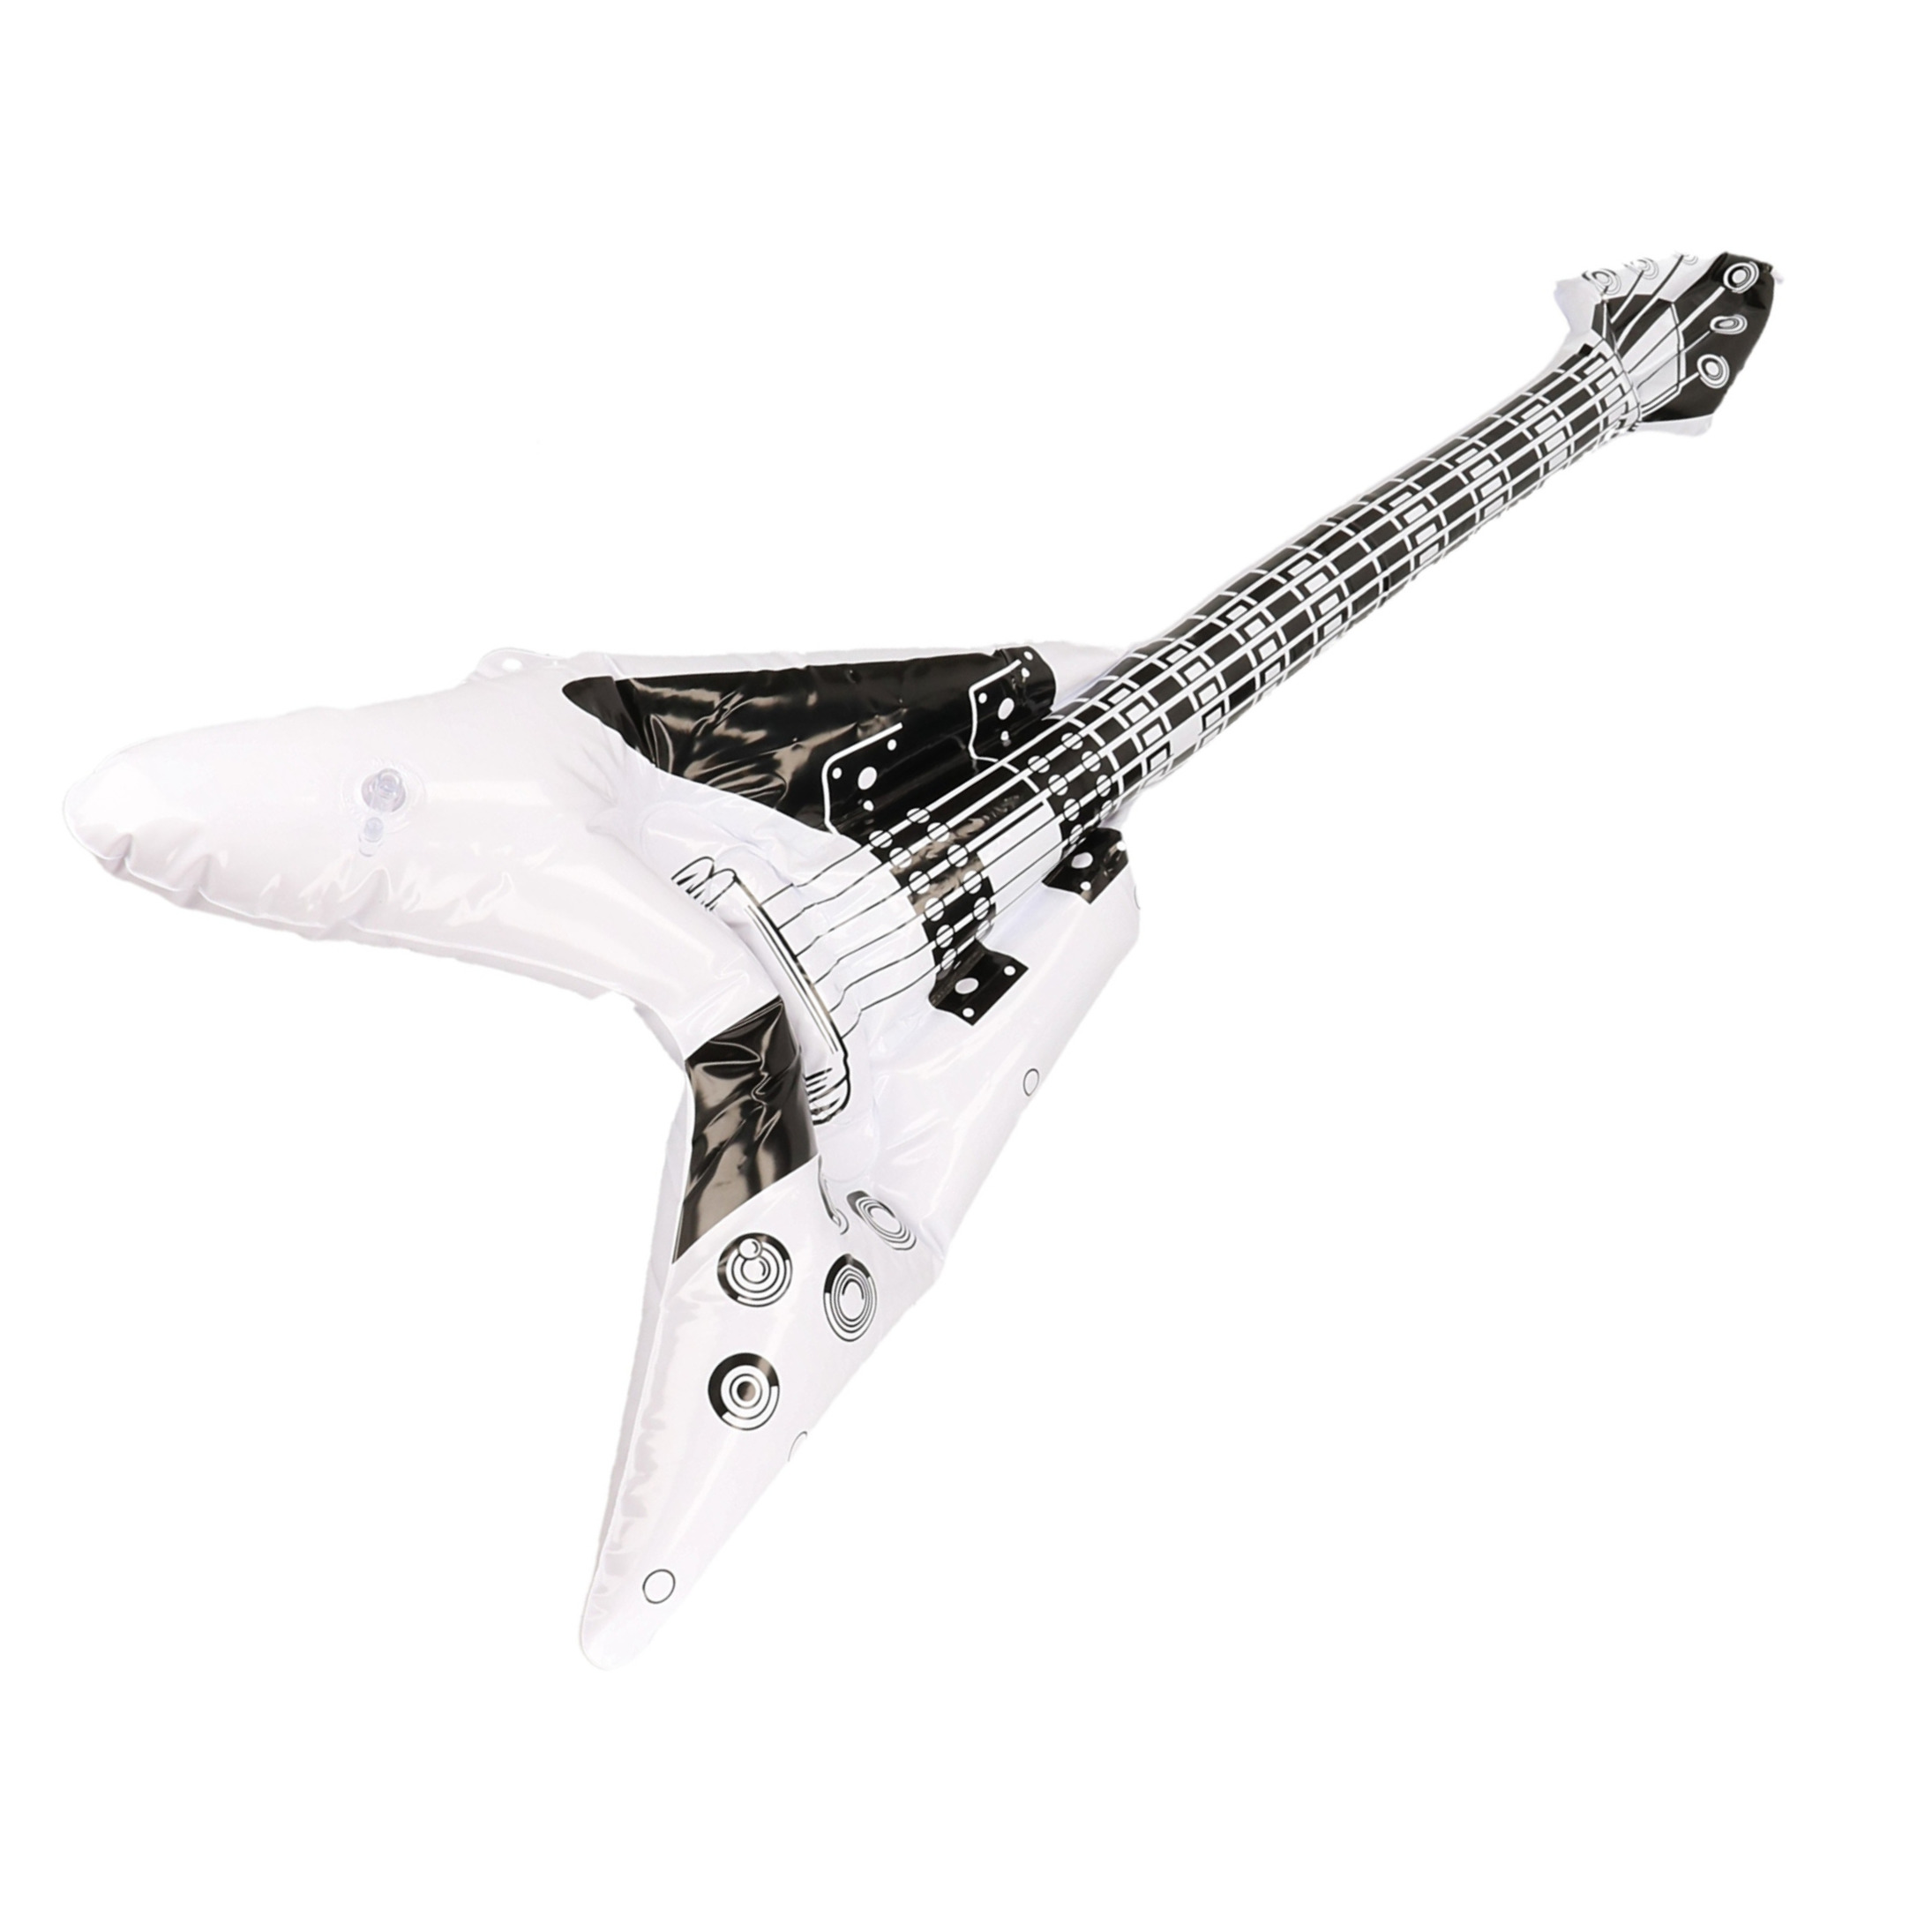 3x stuks opblaasbare rock gitaar muziekinstrument 100 cm wit